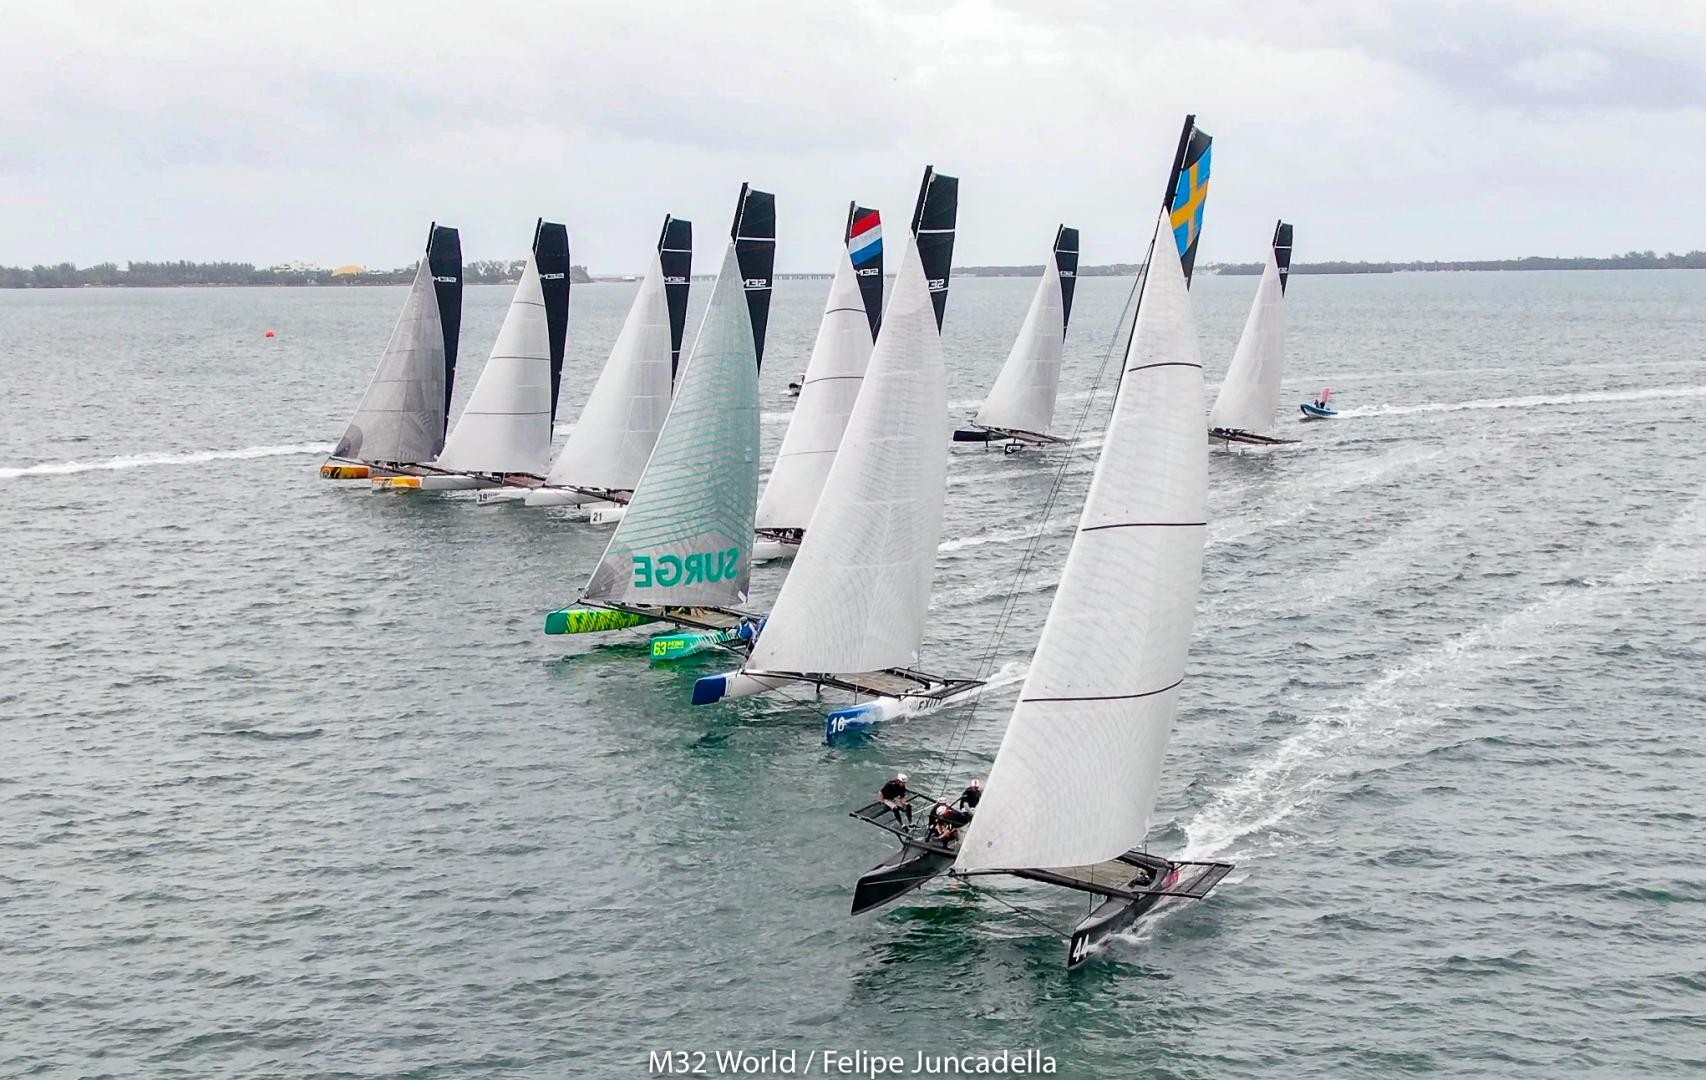 Close fleet at the World Championship in Miami. Photo: m32world/Felipe Juncadella